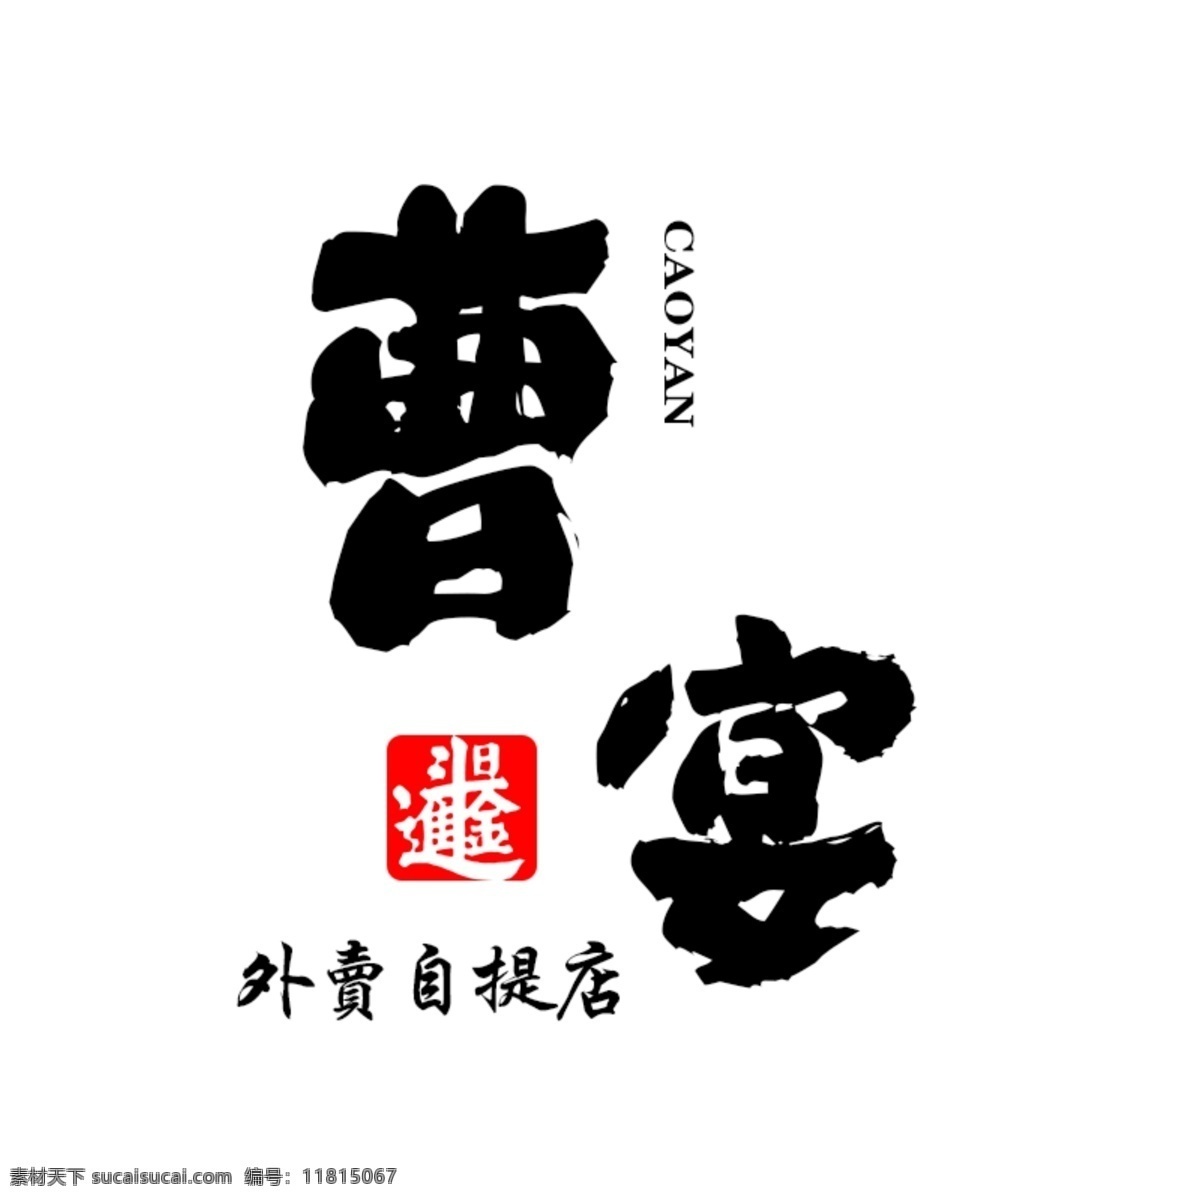 曹记logo logo 汉字 中国 元素 标识标志图标 企业 标志 矢量图库 标志图标